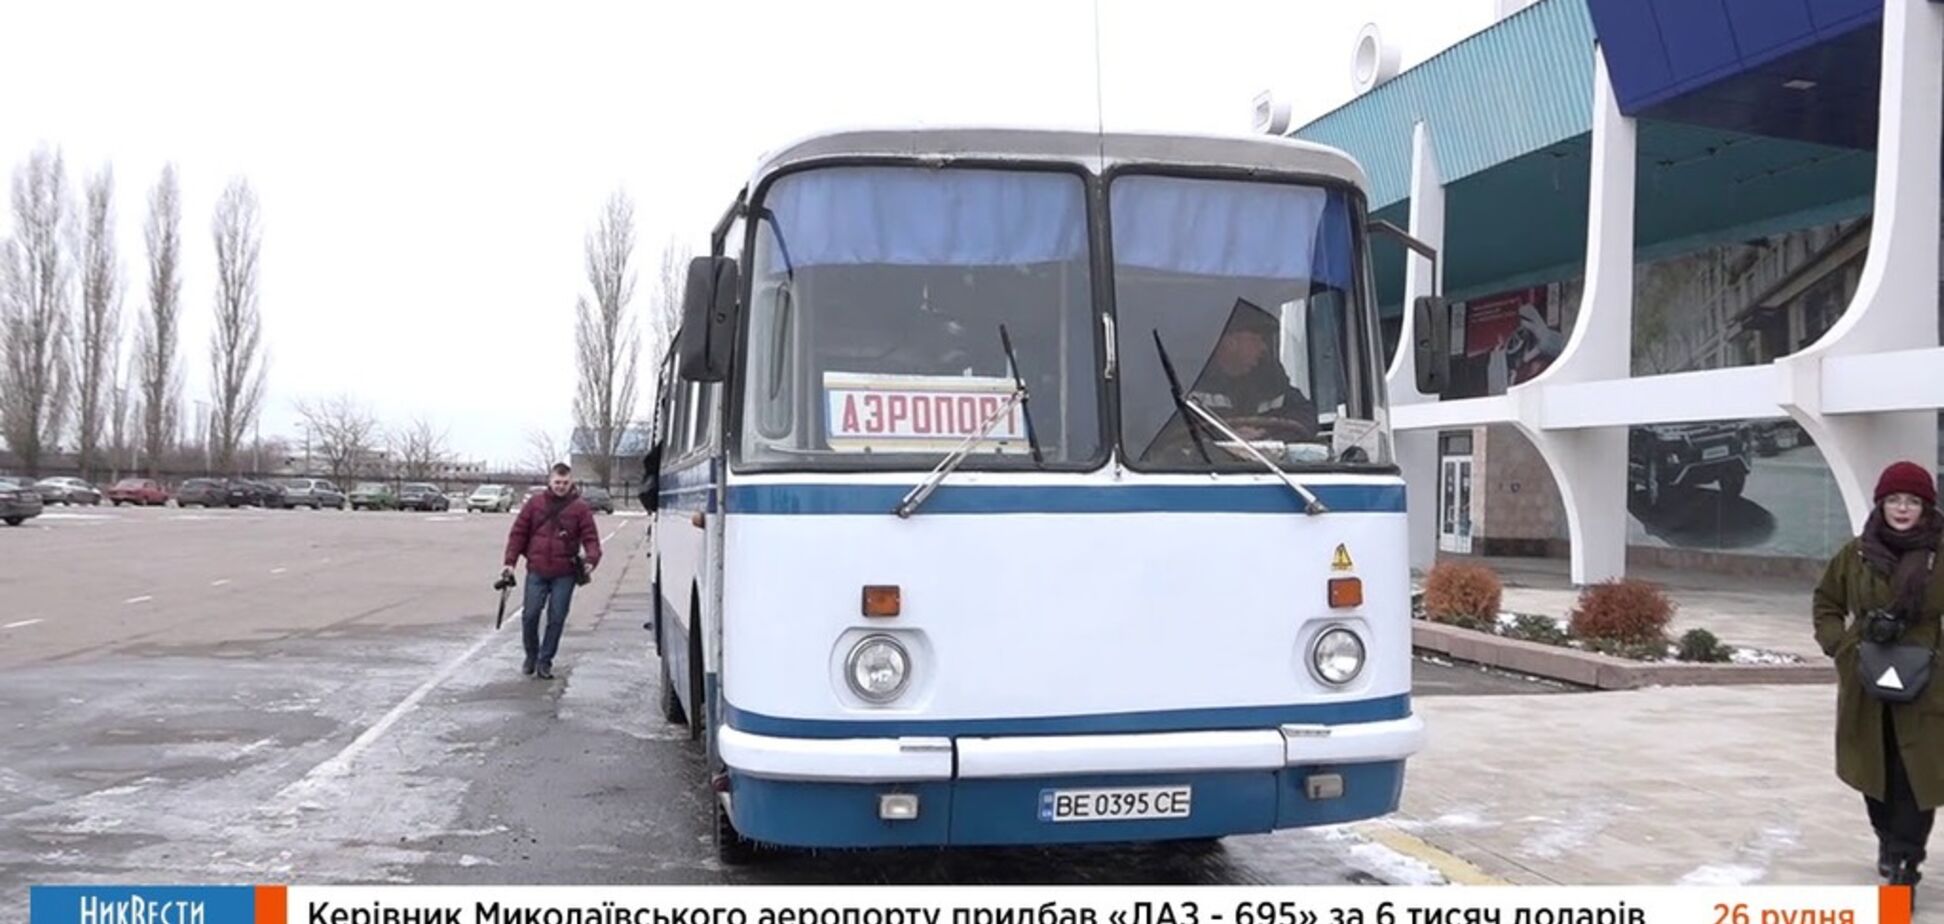 Миколаївський аеропорт придбав 'унікальний' 40-річний автобус для перевезення пасажирів